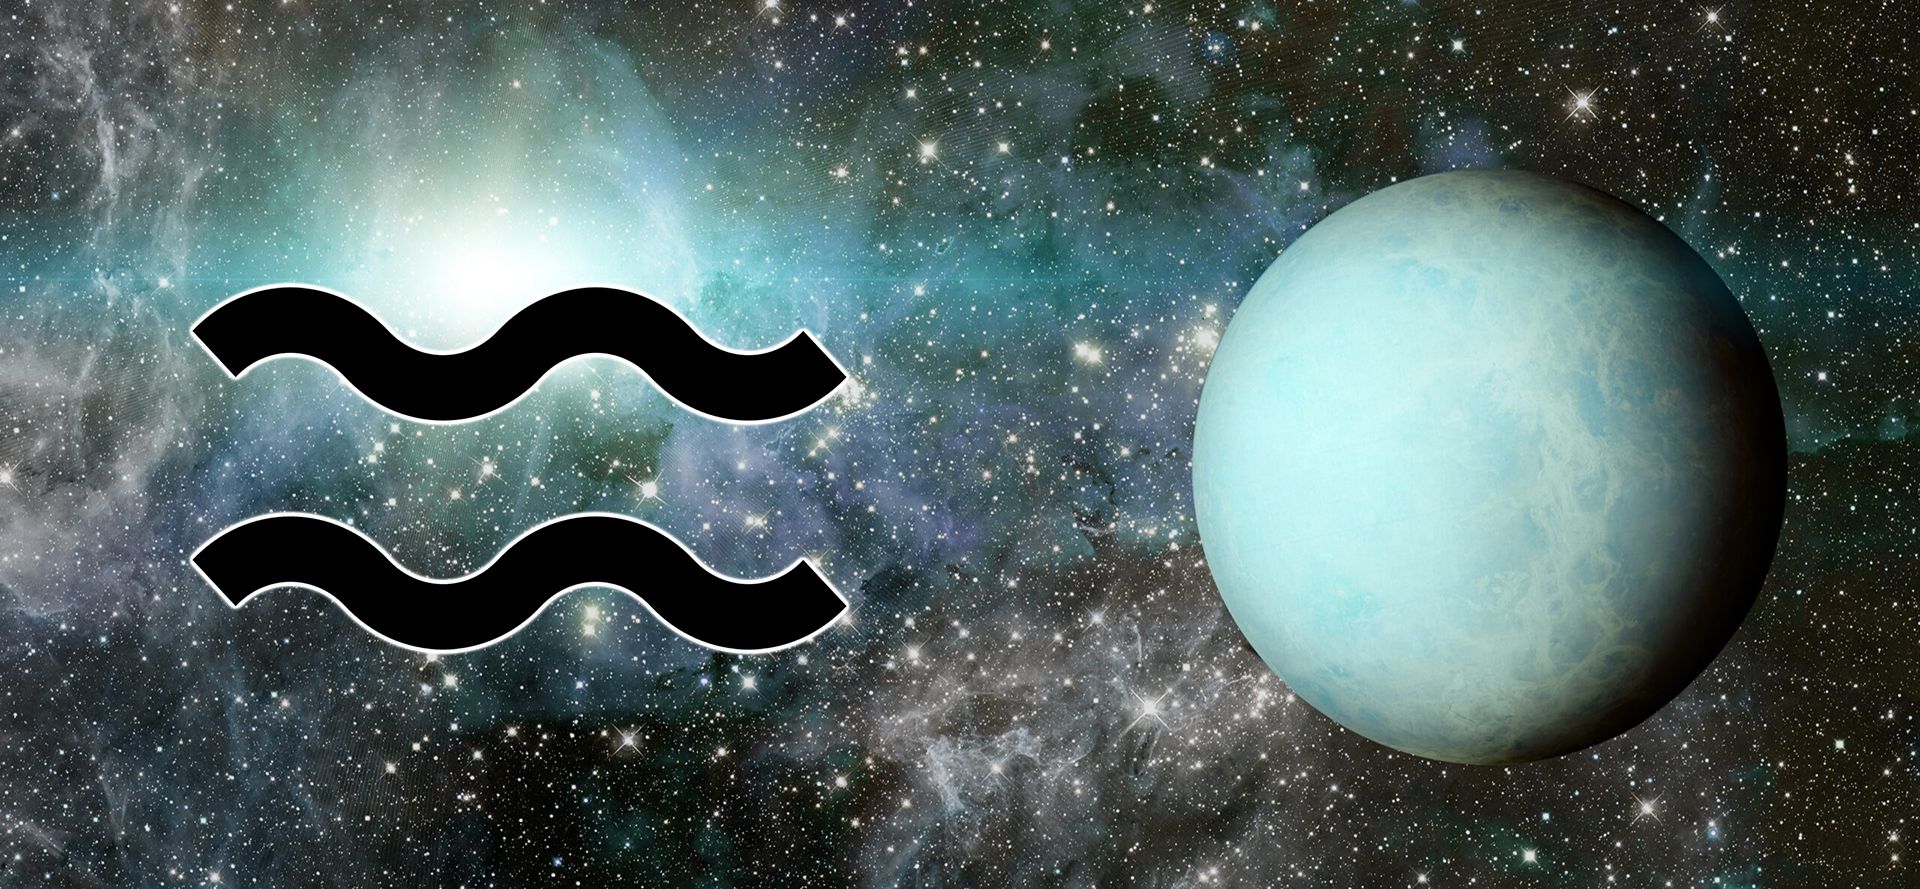 Uranus and Aquarius sign.